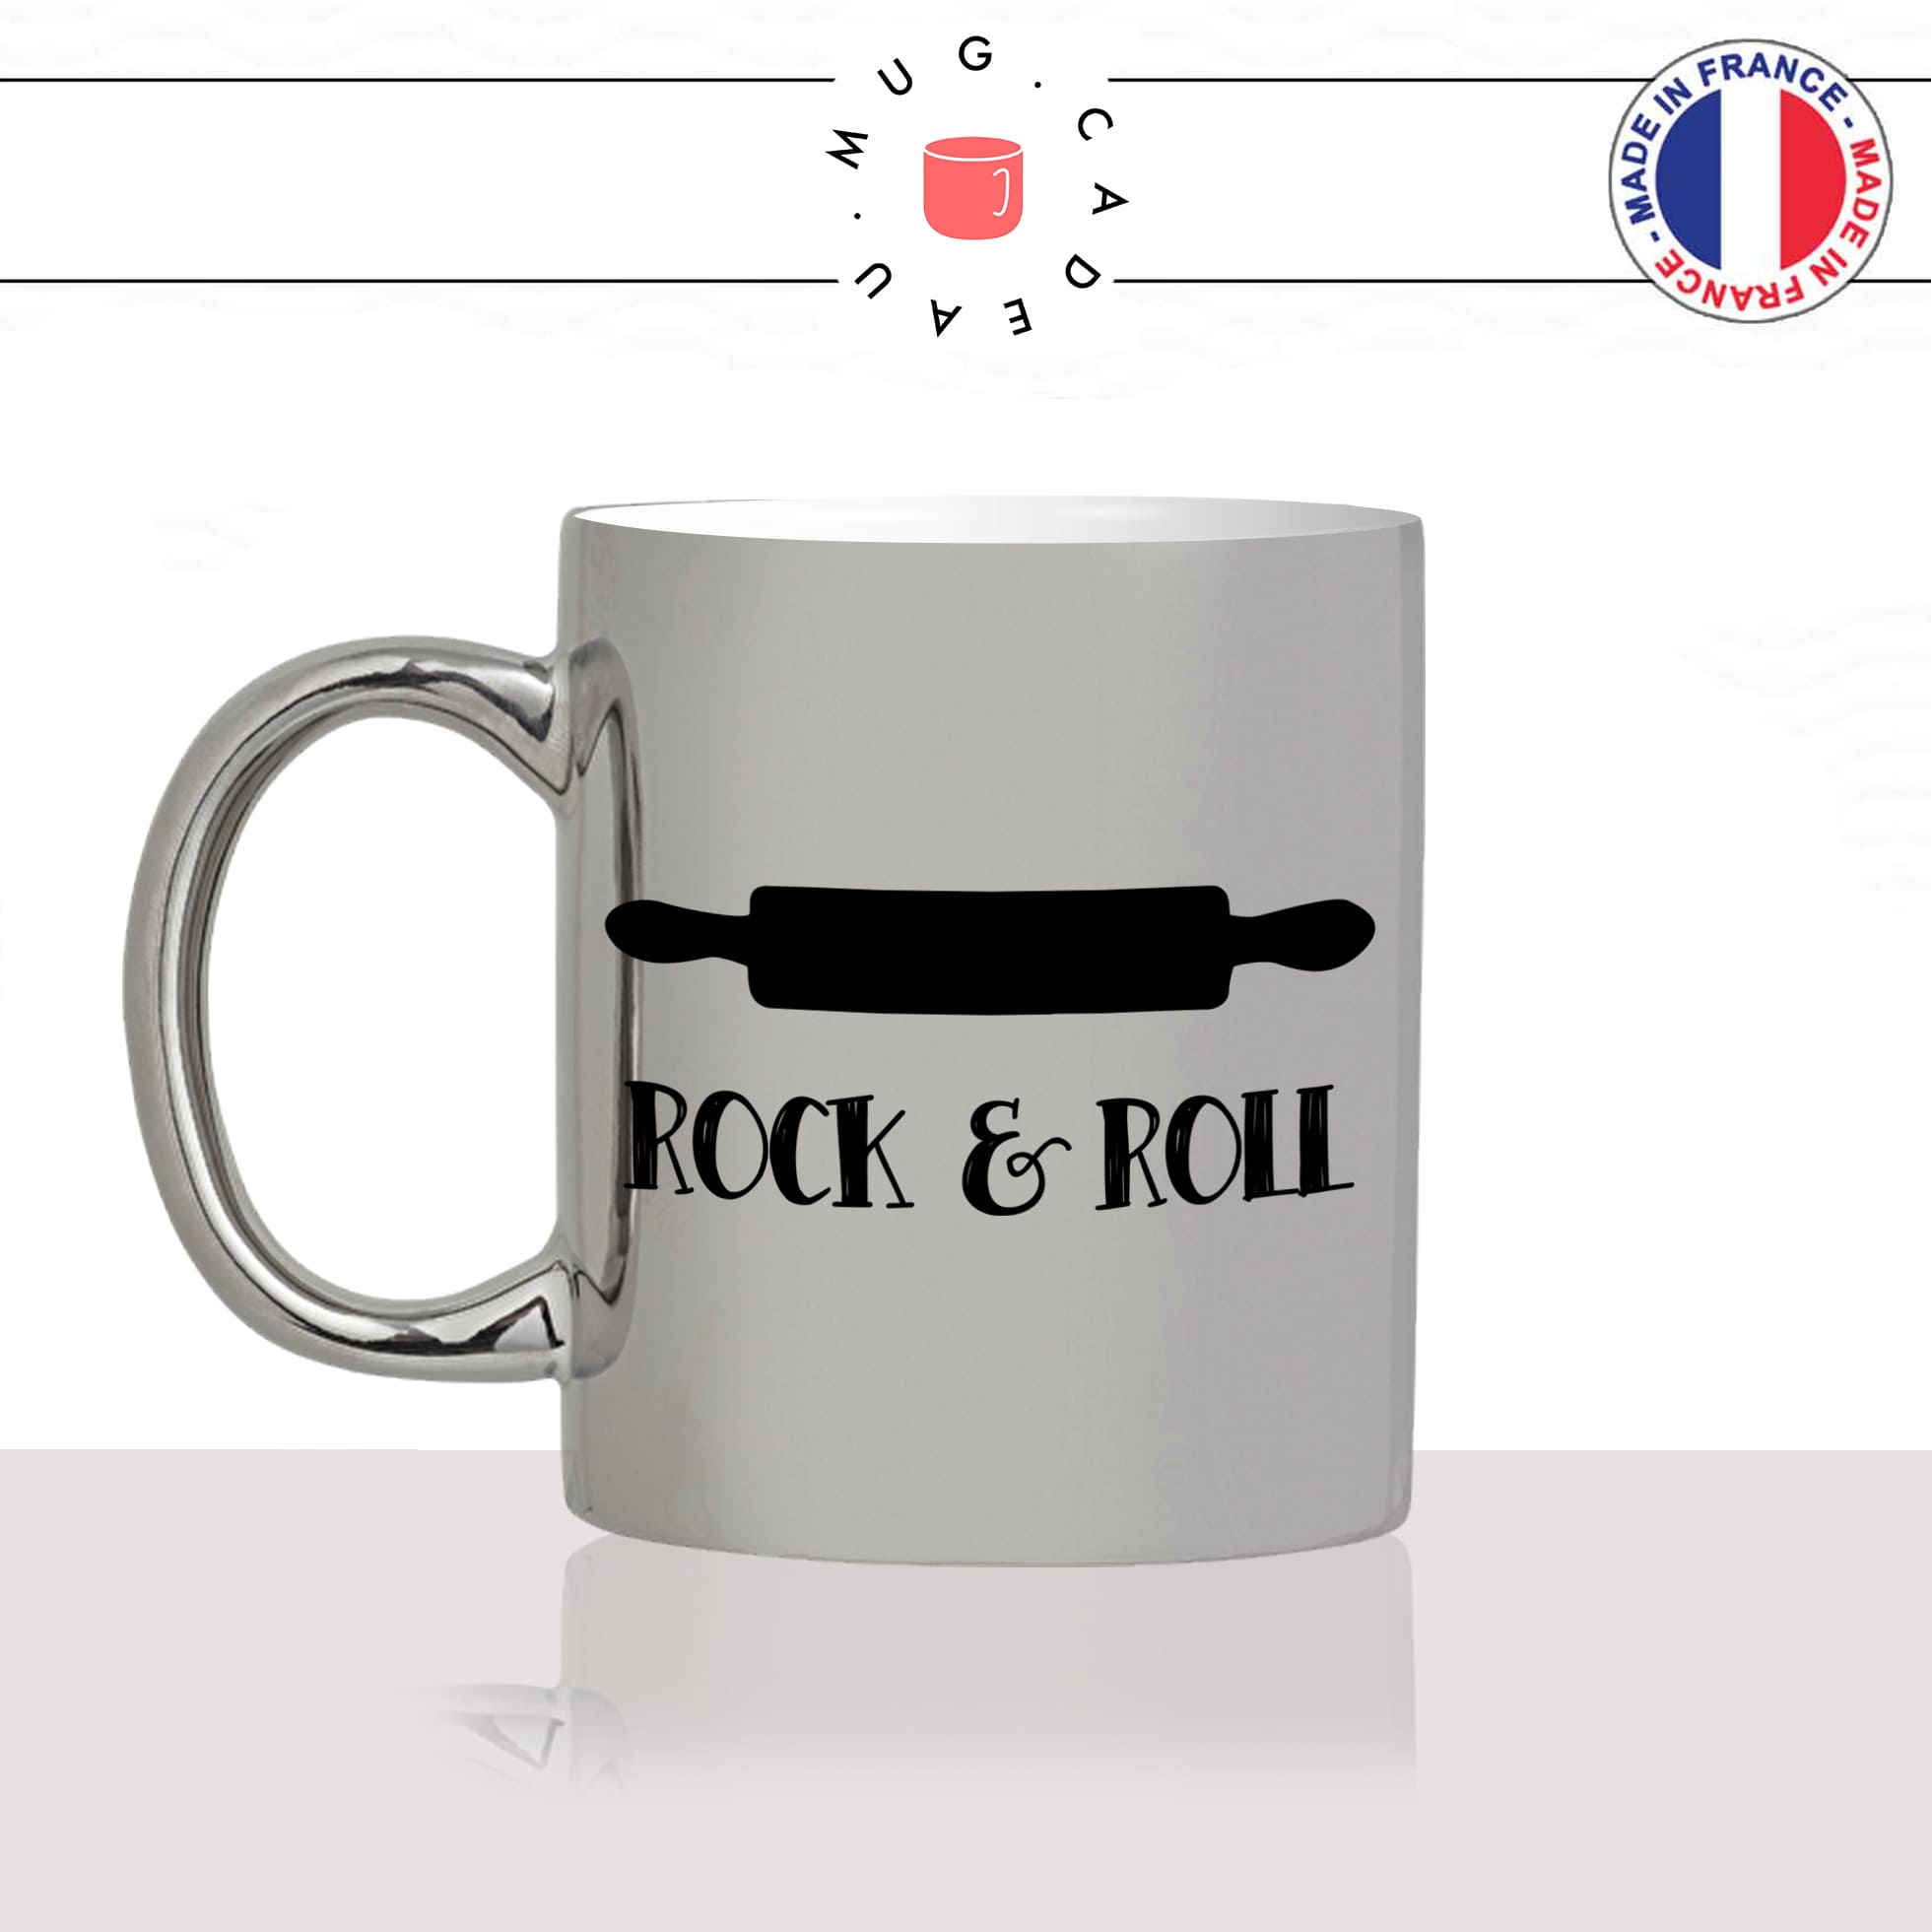 mug-tasse-argent-argenté-silver-rock-and-roll-rouleau-a-patisserie-cuisine-humour-stylé-passion-idée-cadeau-fun-cool-café-thé